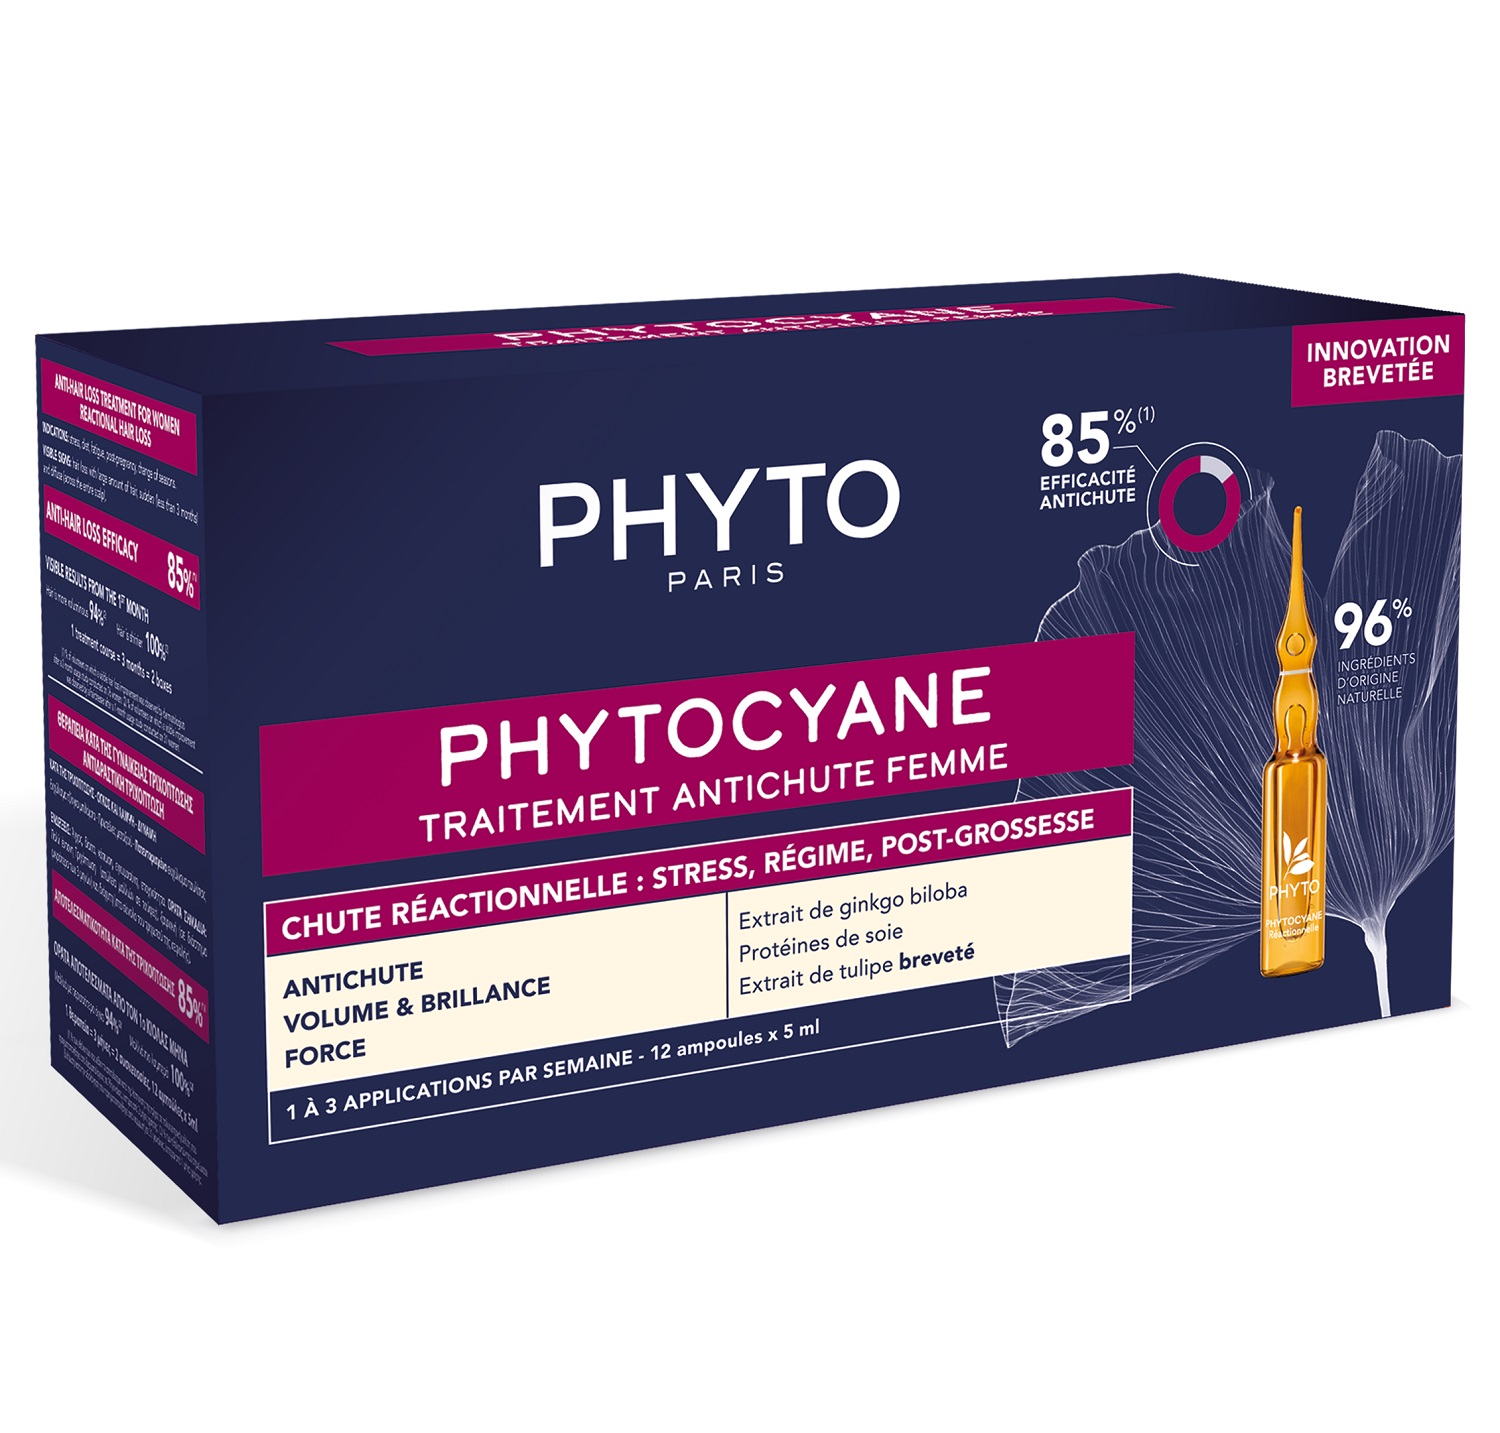 Phyto Сыворотка против выпадения волос для женщин, 12 ампул х 5 мл (Phyto, Phytocyane) phyto фитоциан сыворотка против выпадения волос для женщин 12 флаконов по 5 мл